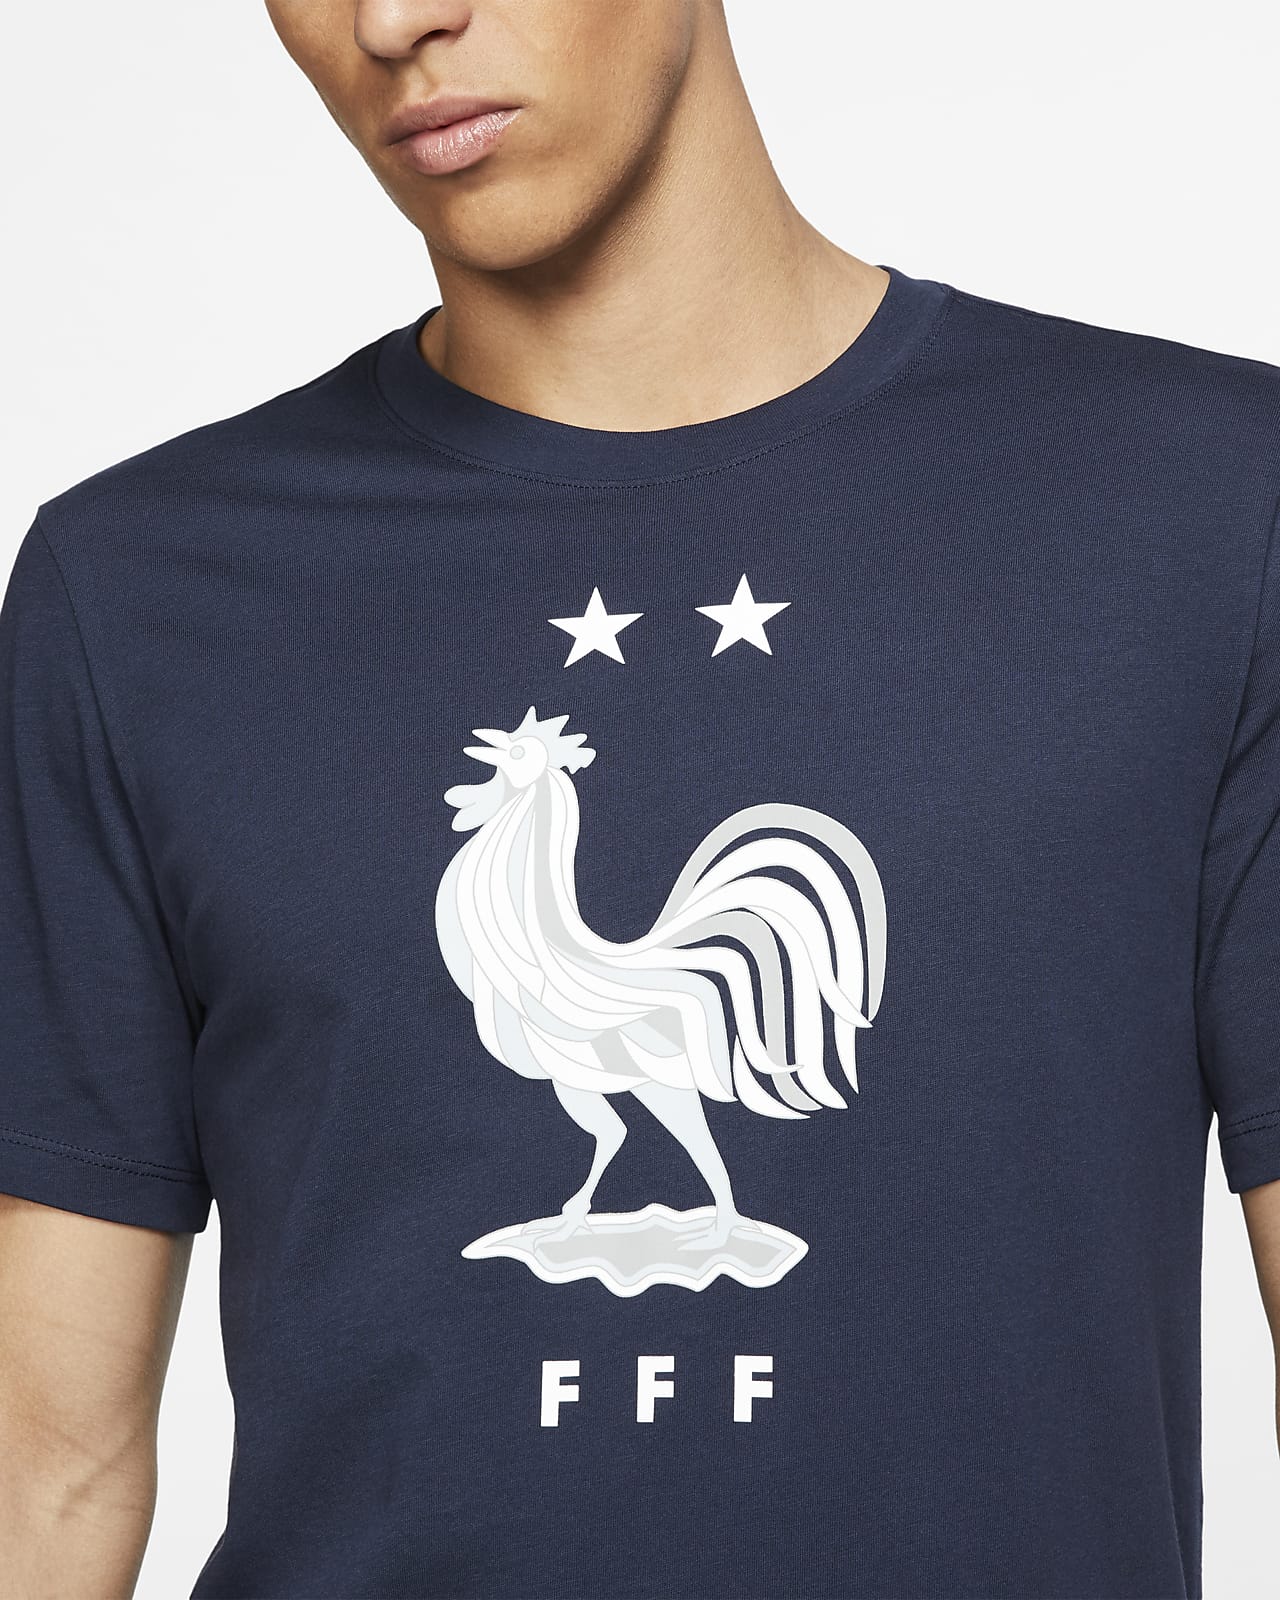 nike fff shirt